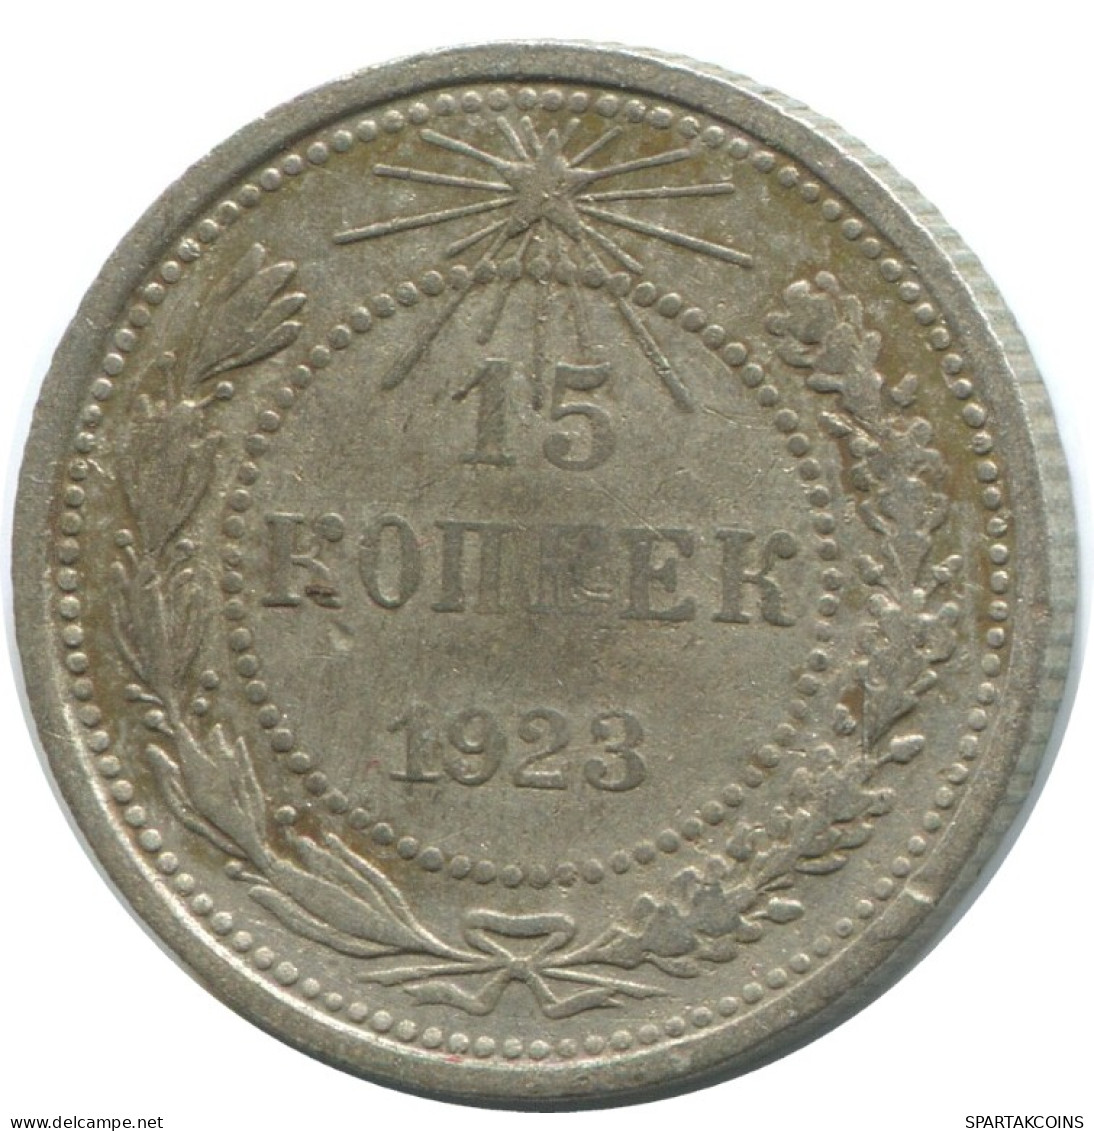 15 KOPEKS 1923 RUSSIA RSFSR SILVER Coin HIGH GRADE #AF098.4.U.A - Russland